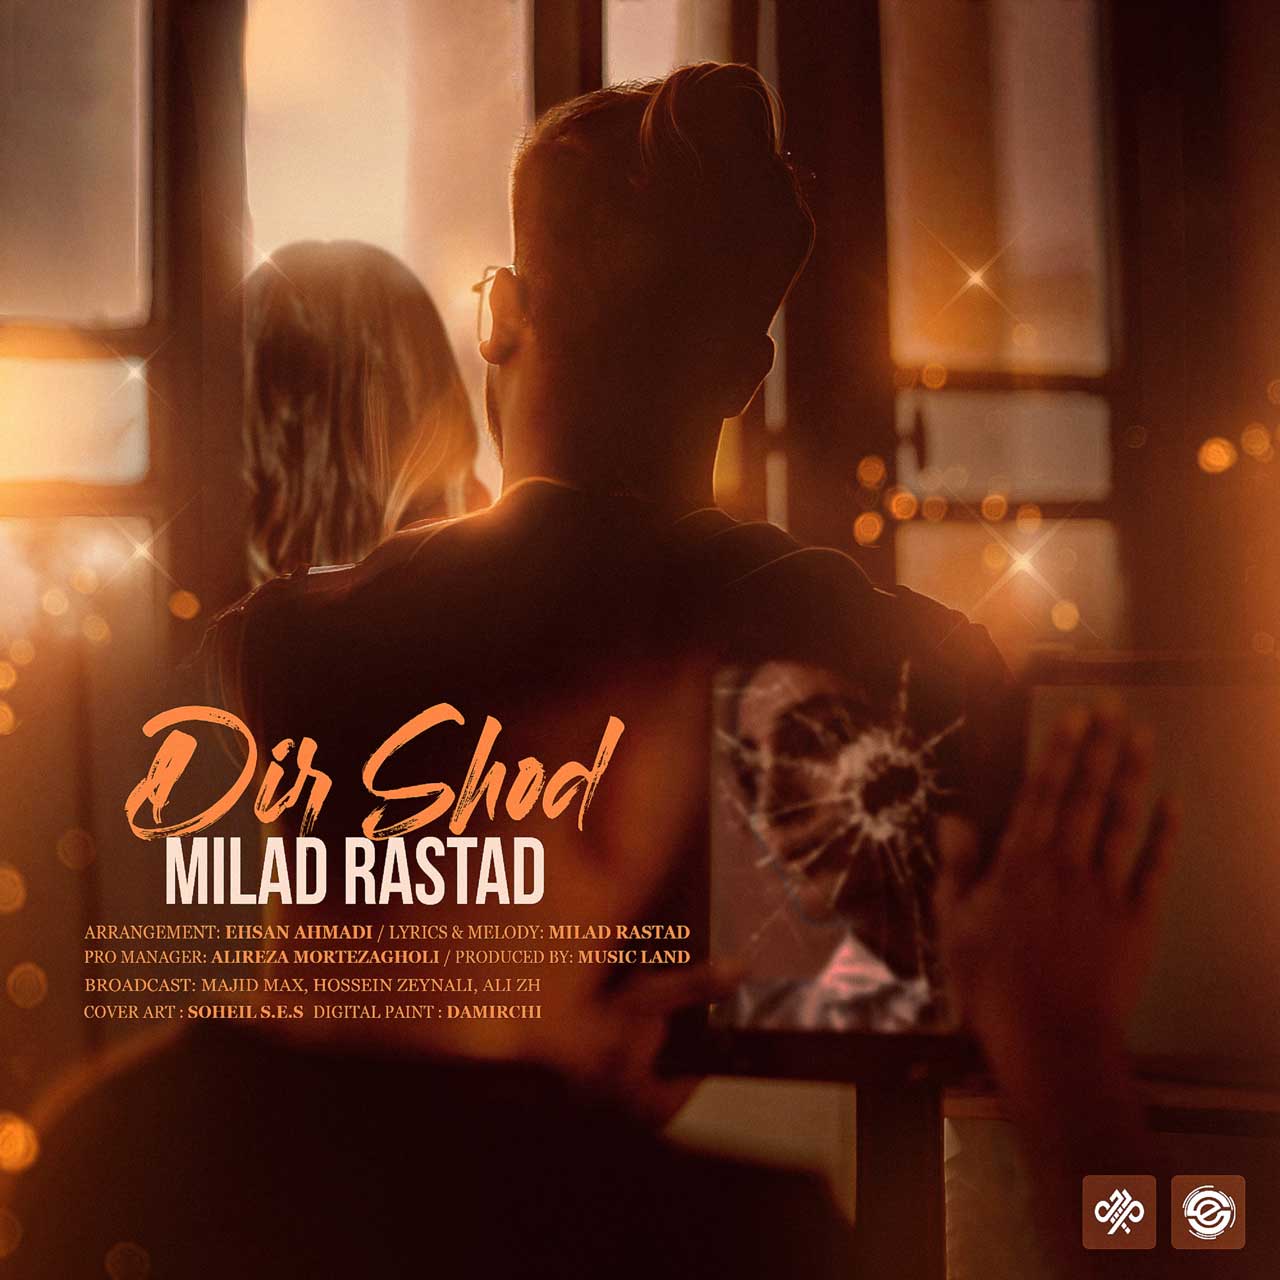  دانلود آهنگ جدید میلاد راستاد - دیر شد | Download New Music By Milad Rastad - Dir Shod